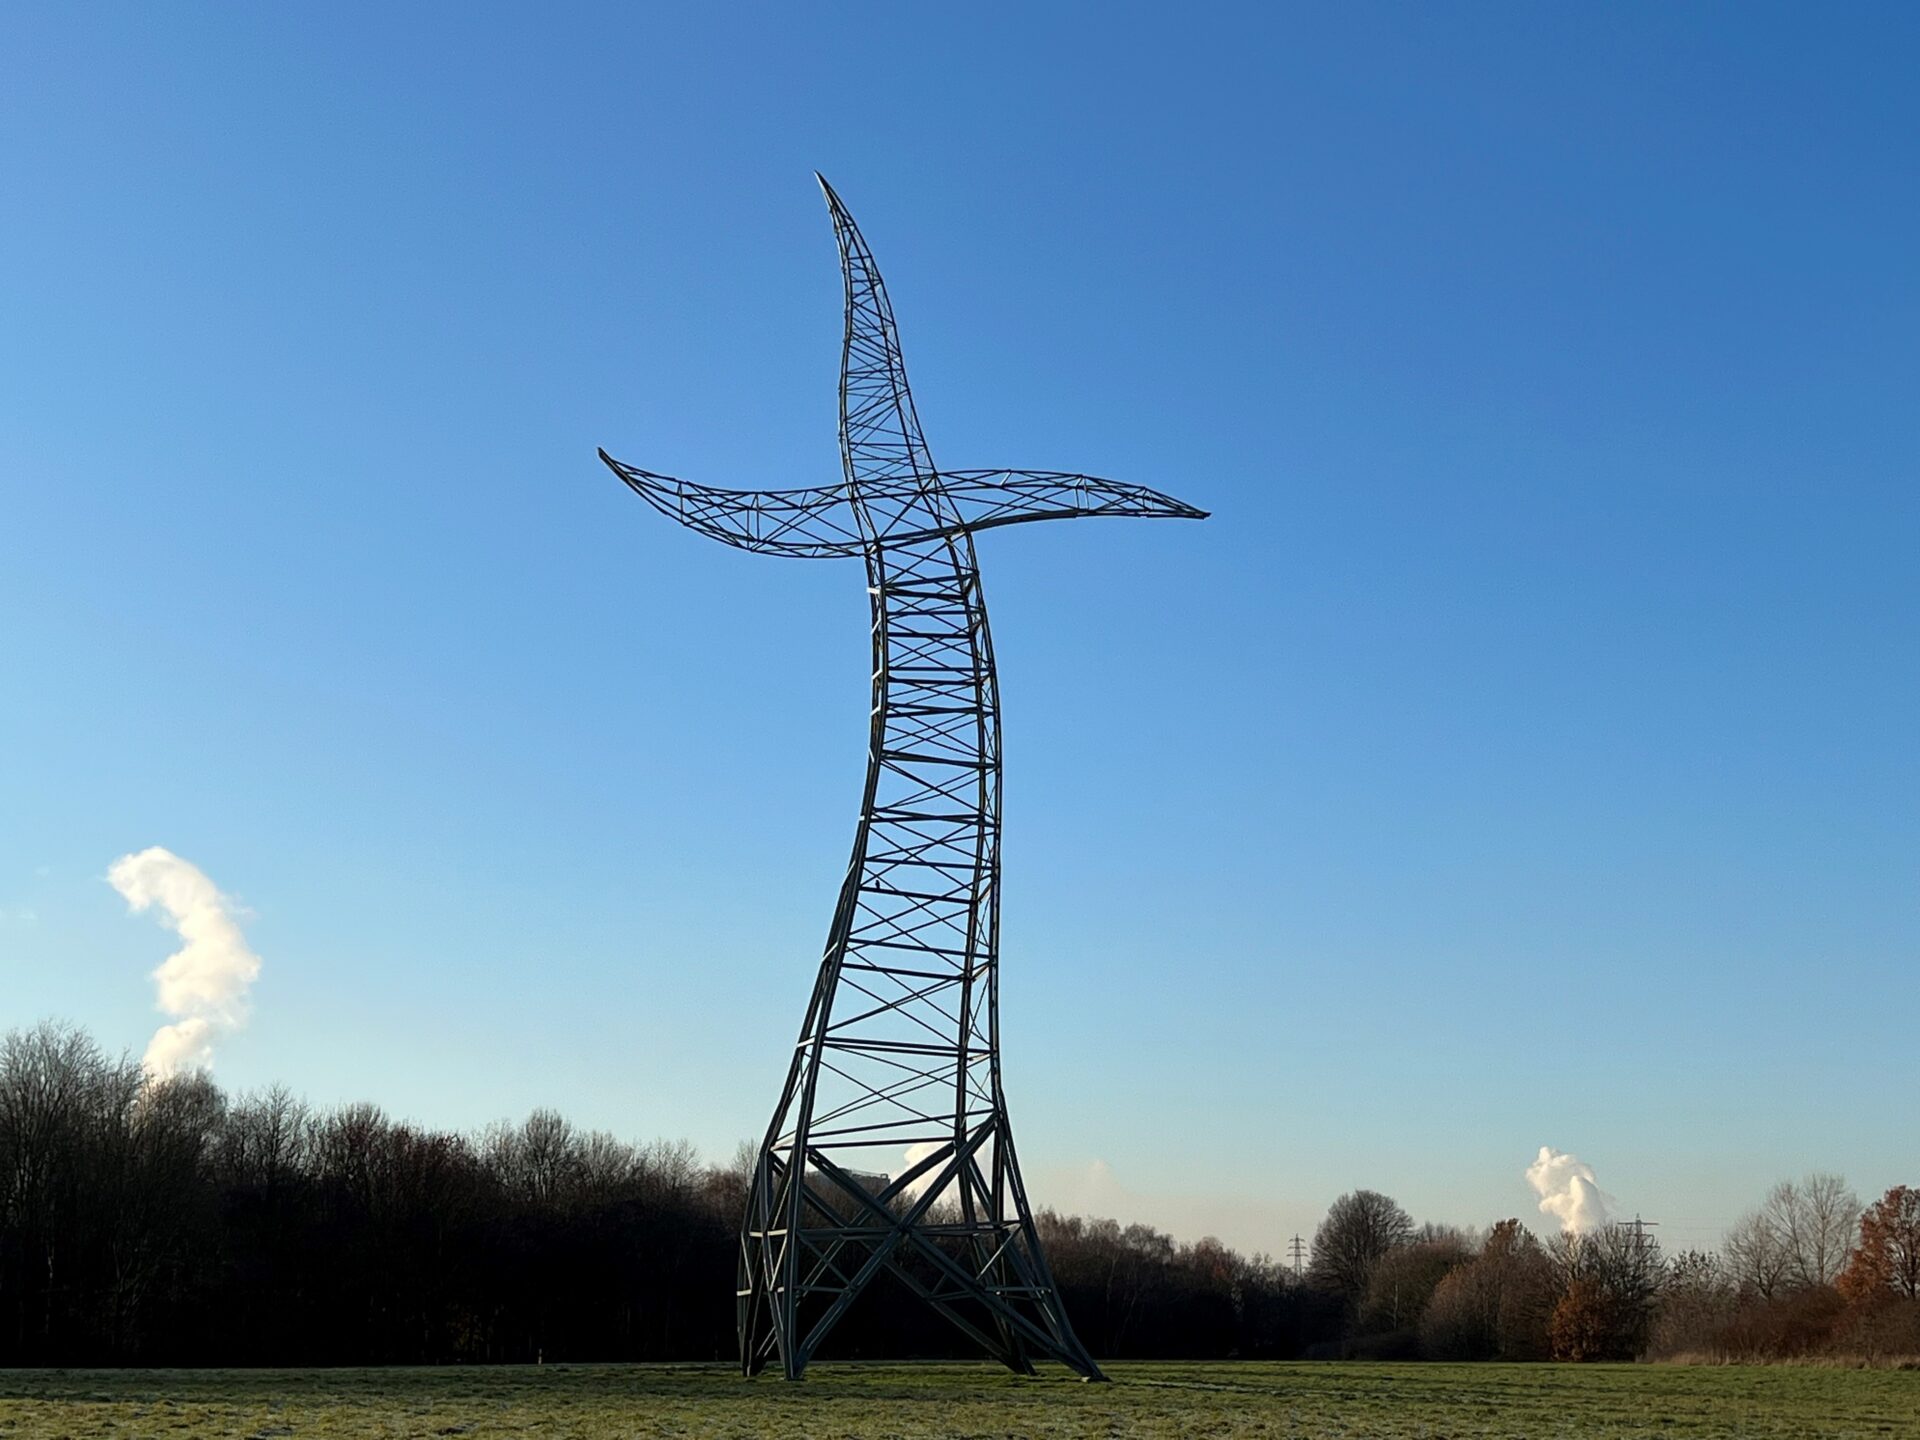 Fotospots in NRW: Der Zauberlehrling (oder Tanzender Strommast) wurde von der Berliner Künstlergruppe Inges Idee anlässlich der Ausstellung Emscherkunst 2013 entworfen.